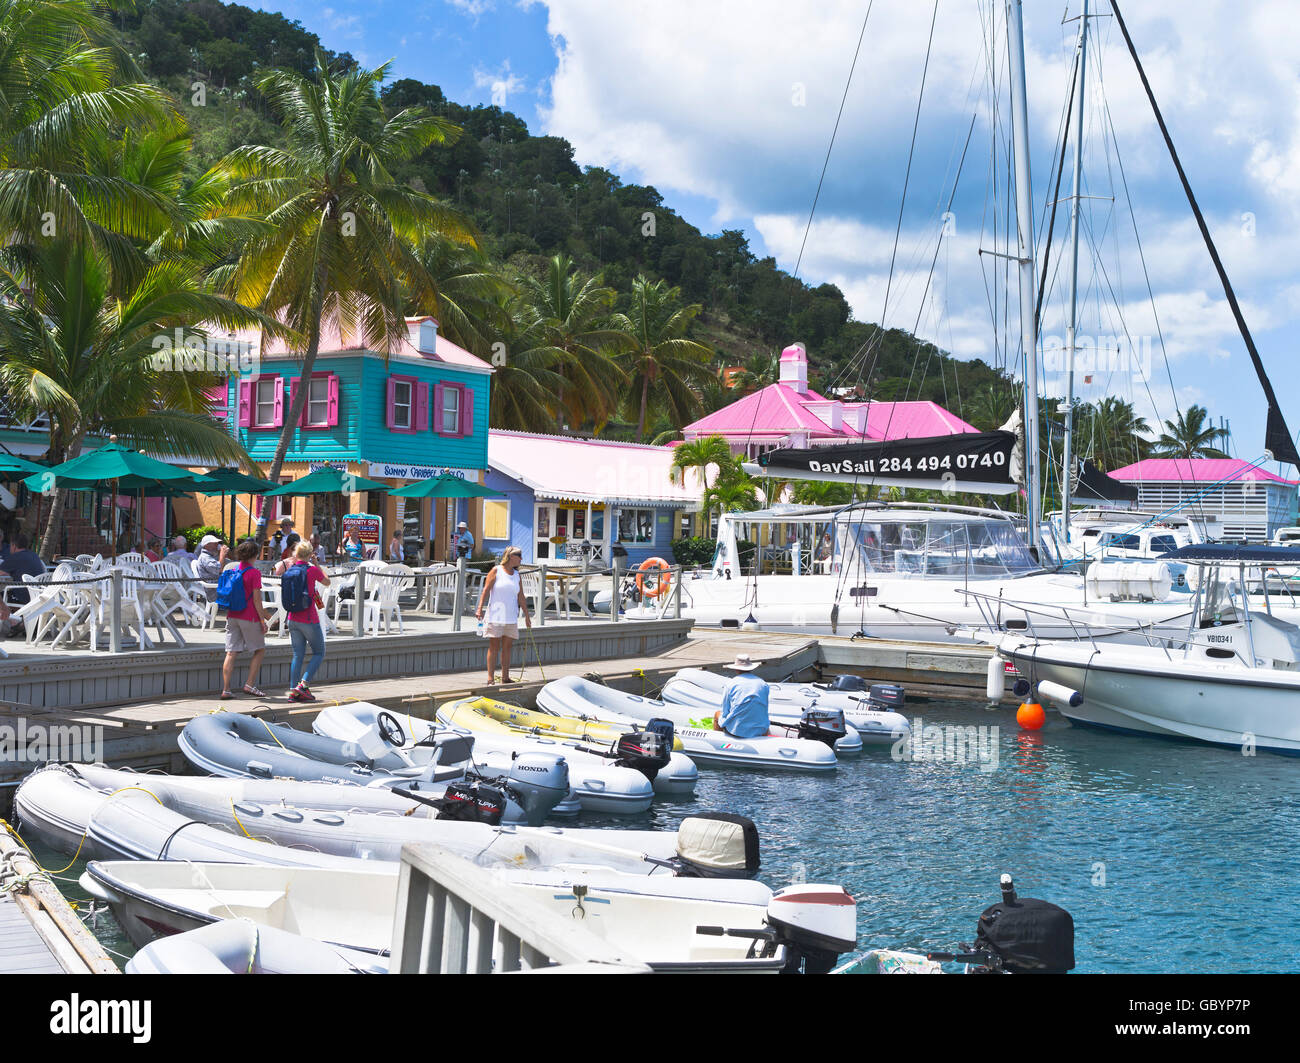 Caribbean lifestyle immagini e fotografie stock ad alta risoluzione - Alamy